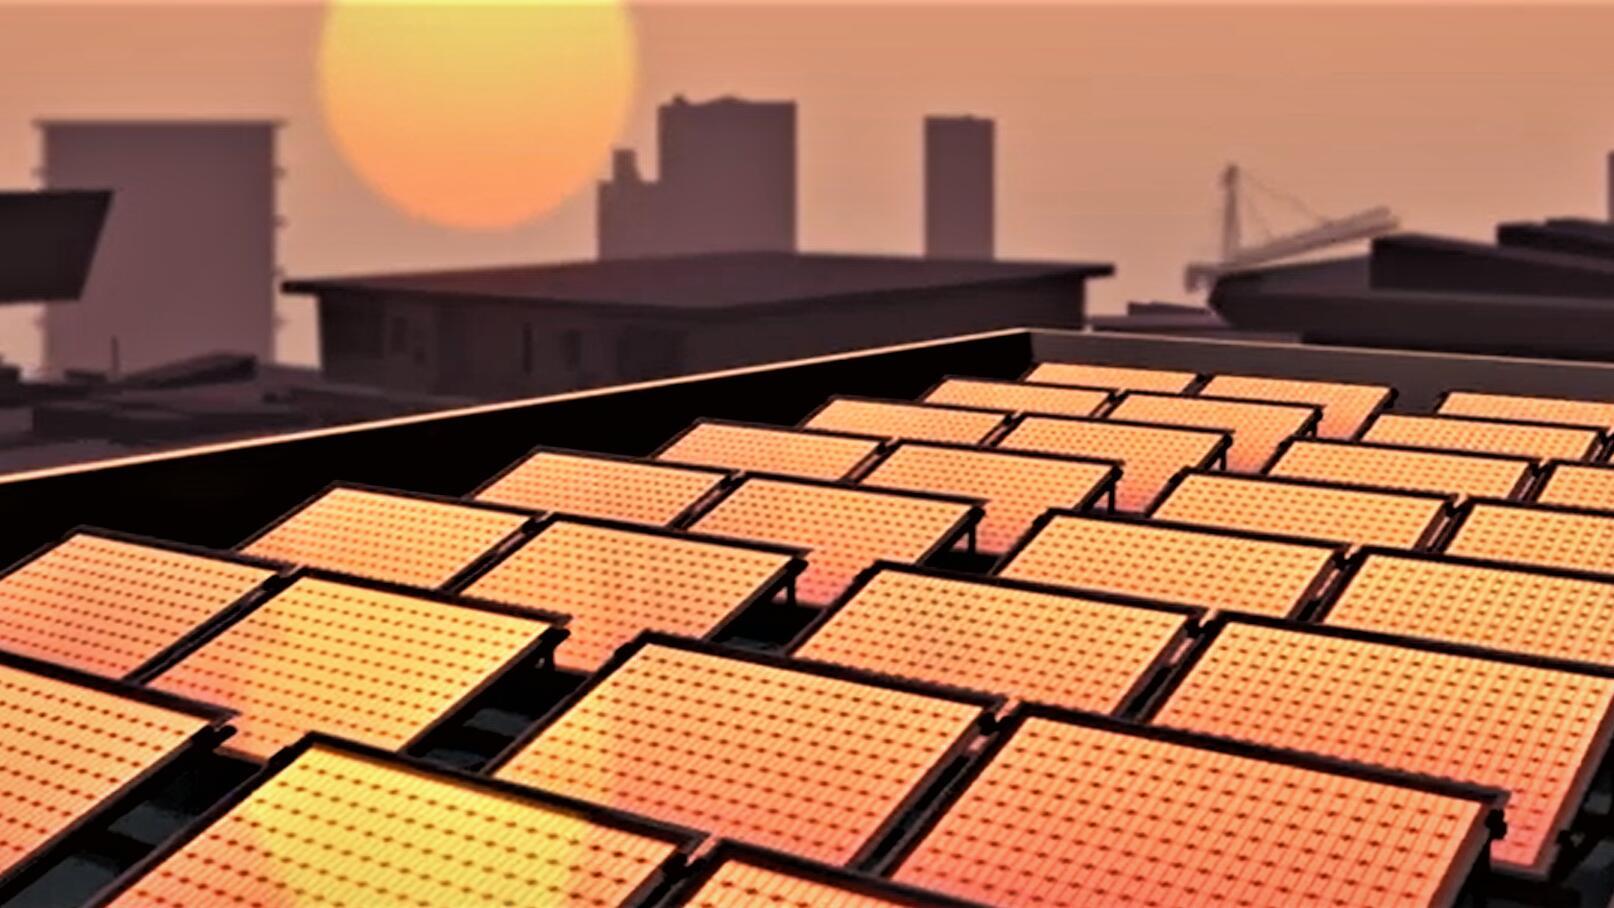 Film still of a rooftop full of solar panels